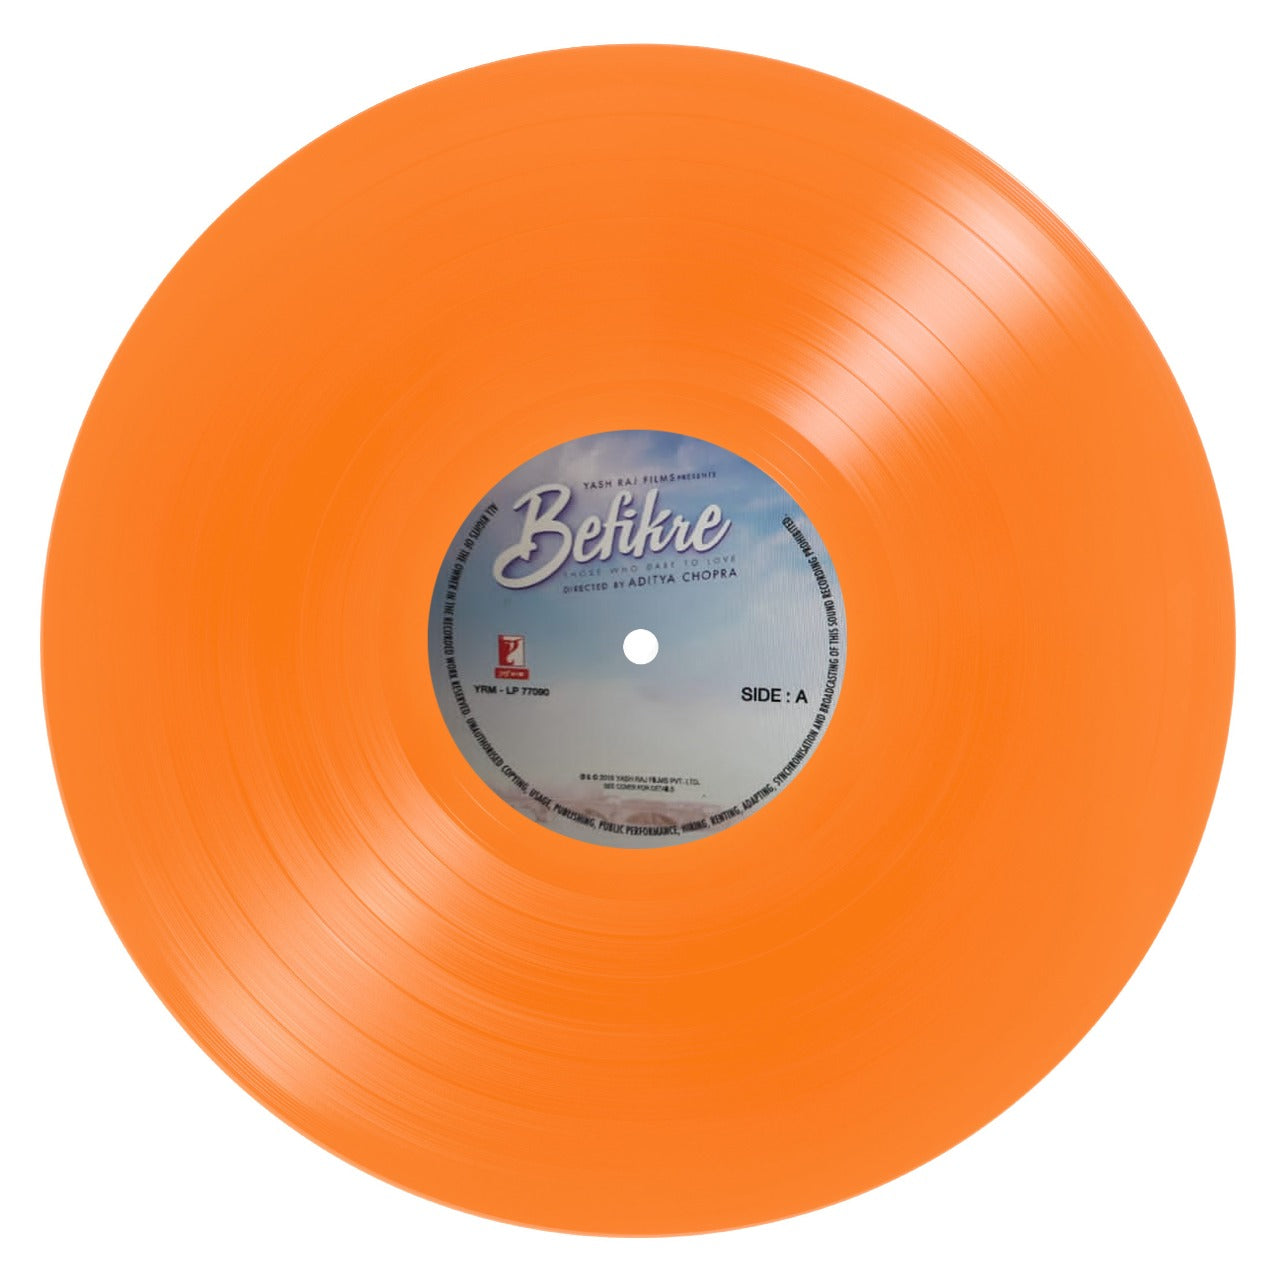 Befikre - Orange Coloured - LP Record